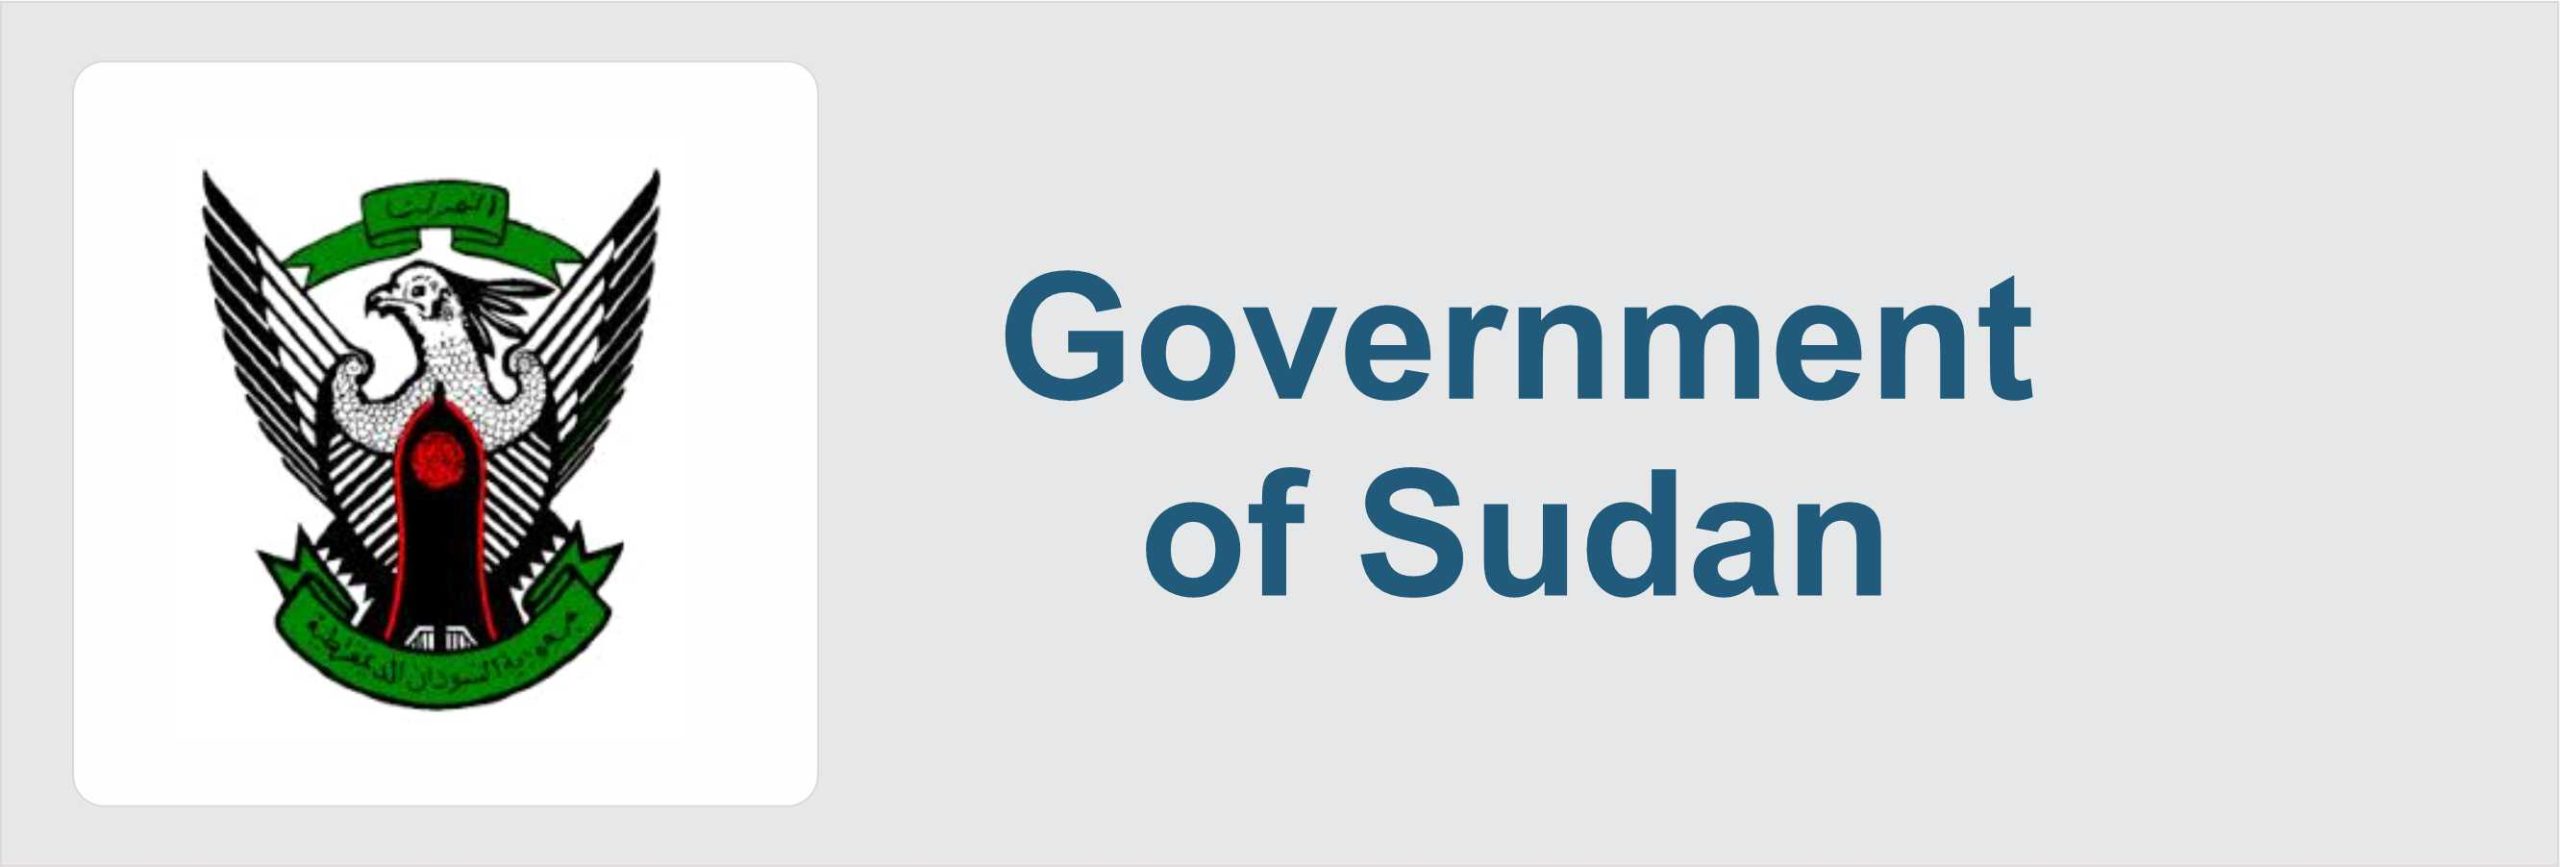 Government of Sudan